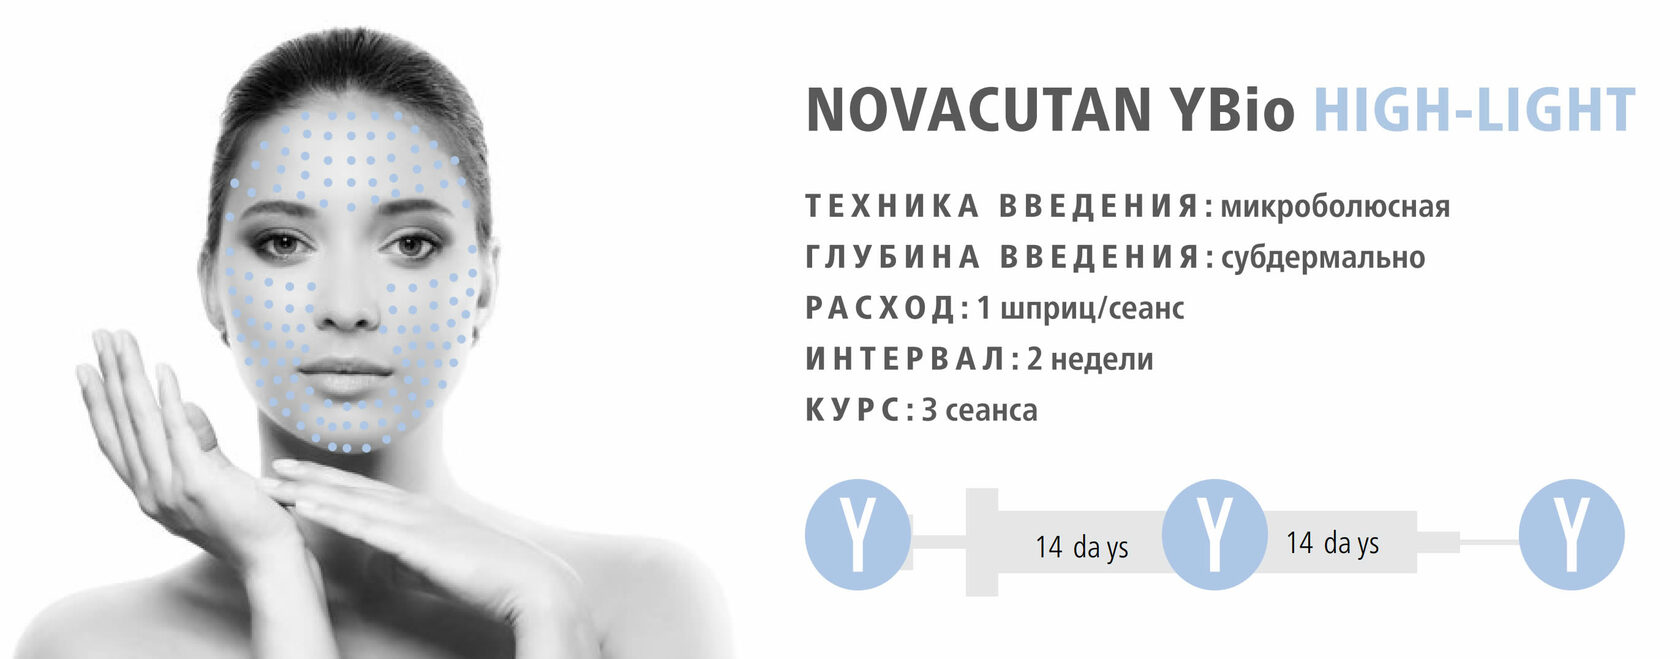 Новокутан отзывы пациентов. Биоревитализация новокутан. Novacutan YBIO. Биоревитализация лица Novacutan. Новакутан y Bio техника.